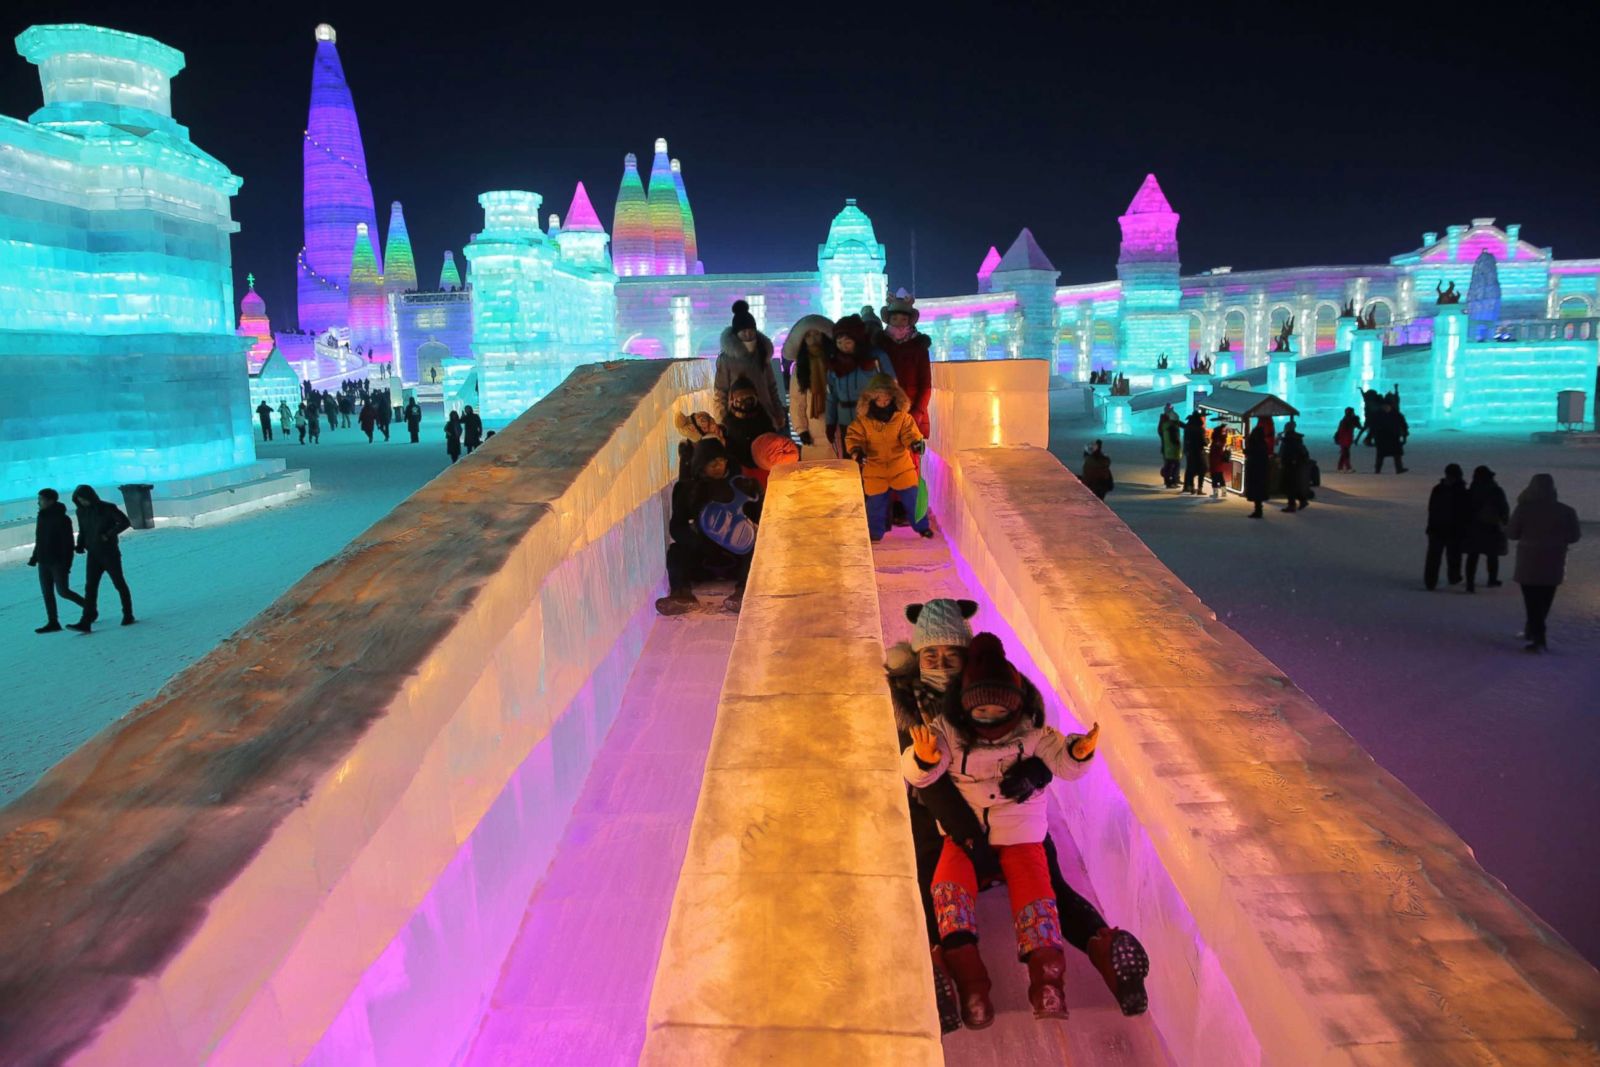 Annual Harbin Ice and Snow Festival Photos Image 101 ABC News